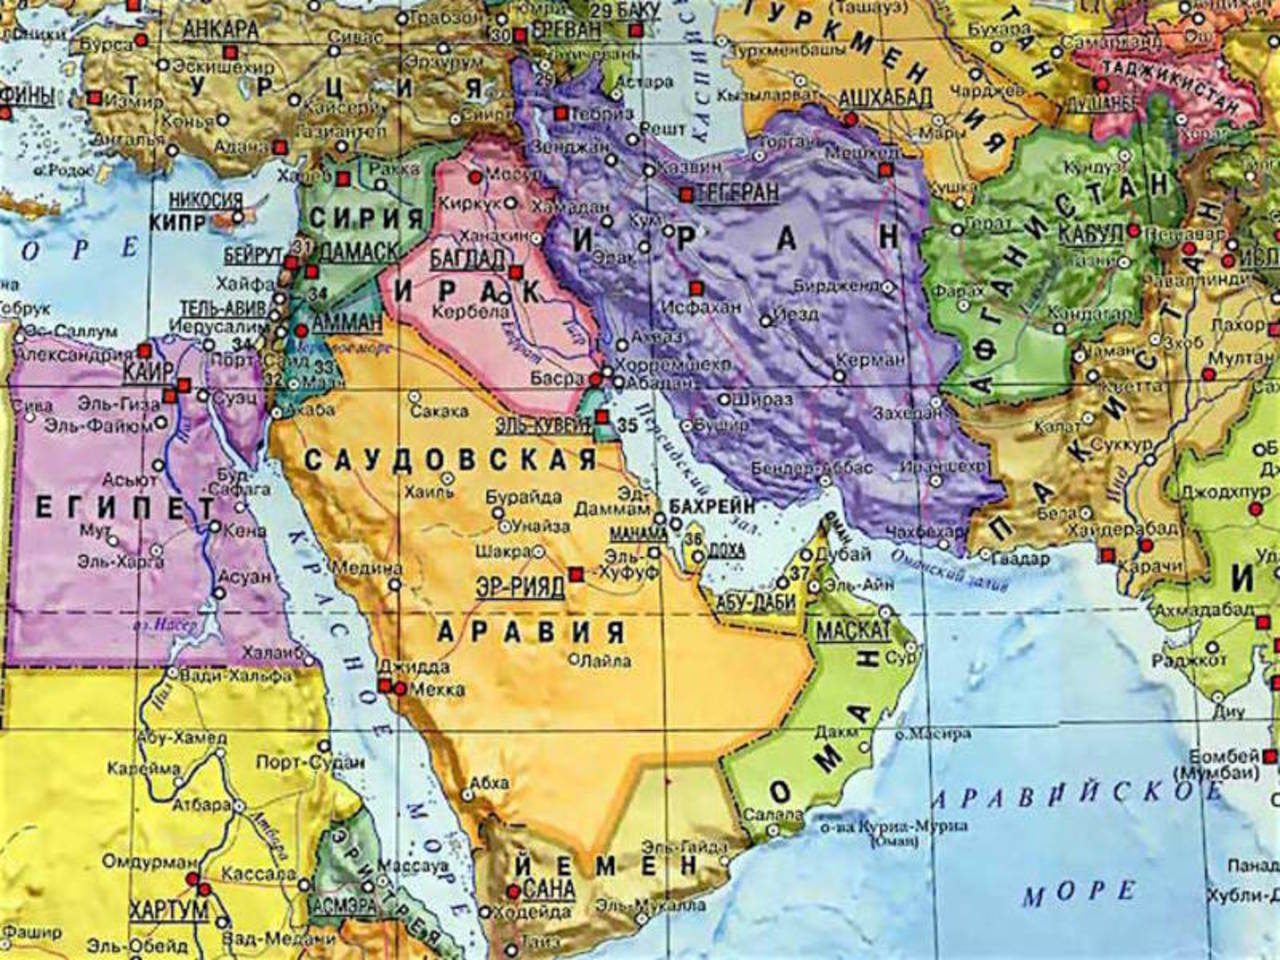 Хаджистан страна где находится. Политическая карта ближнего Востока. Страны Персидского залива на карте политической. Королевство Саудовская Аравия на карте.